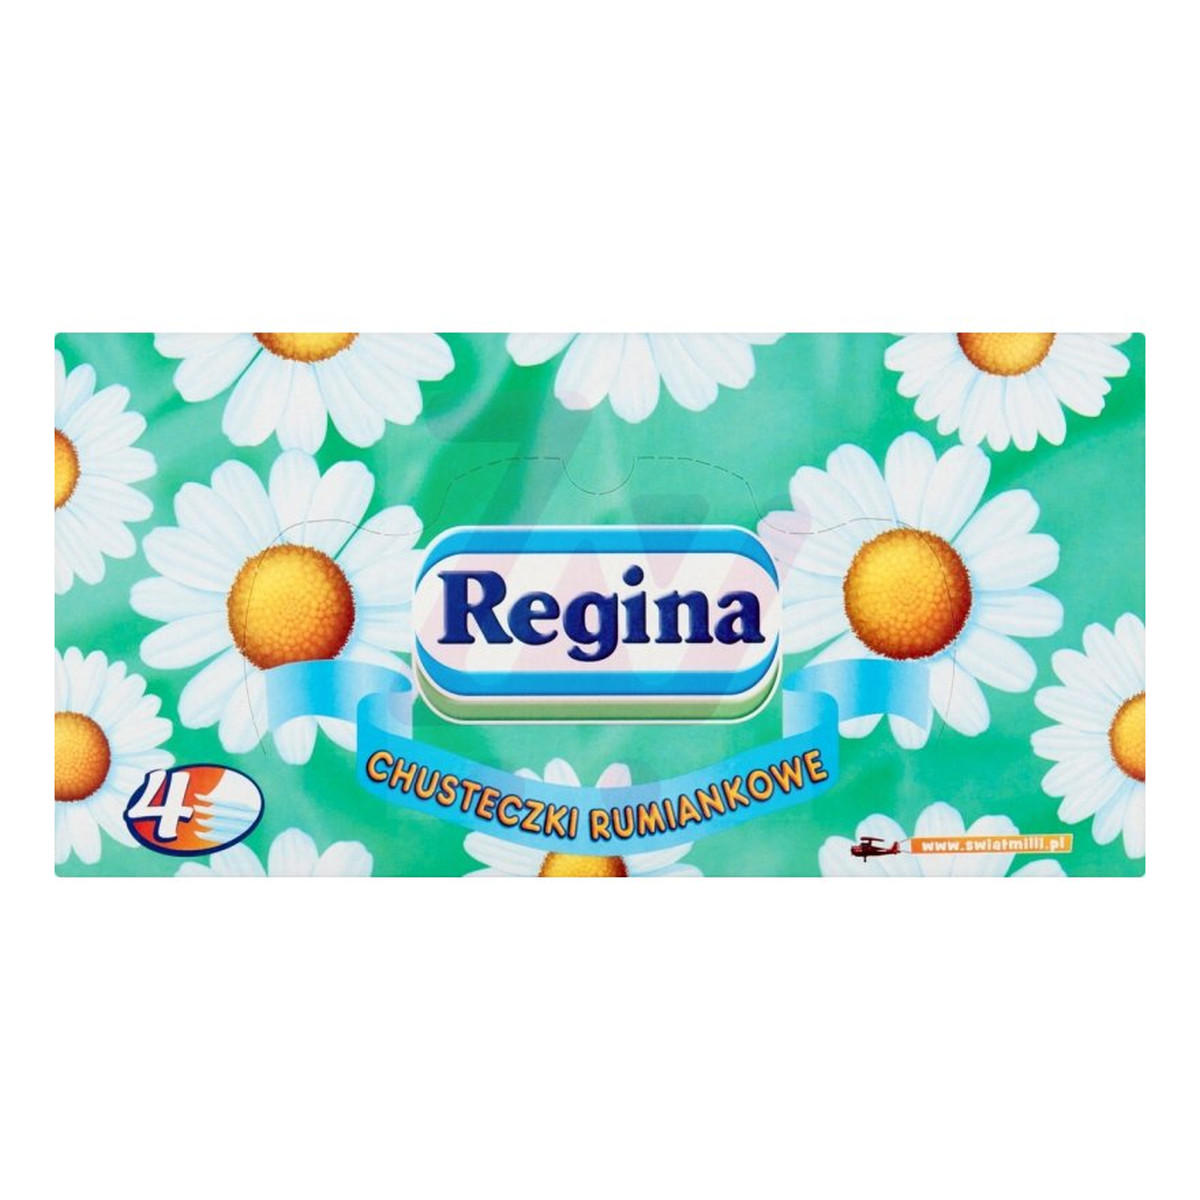 Regina Chusteczki Higieniczne Rumiankowe w pudełku 96 sztuk